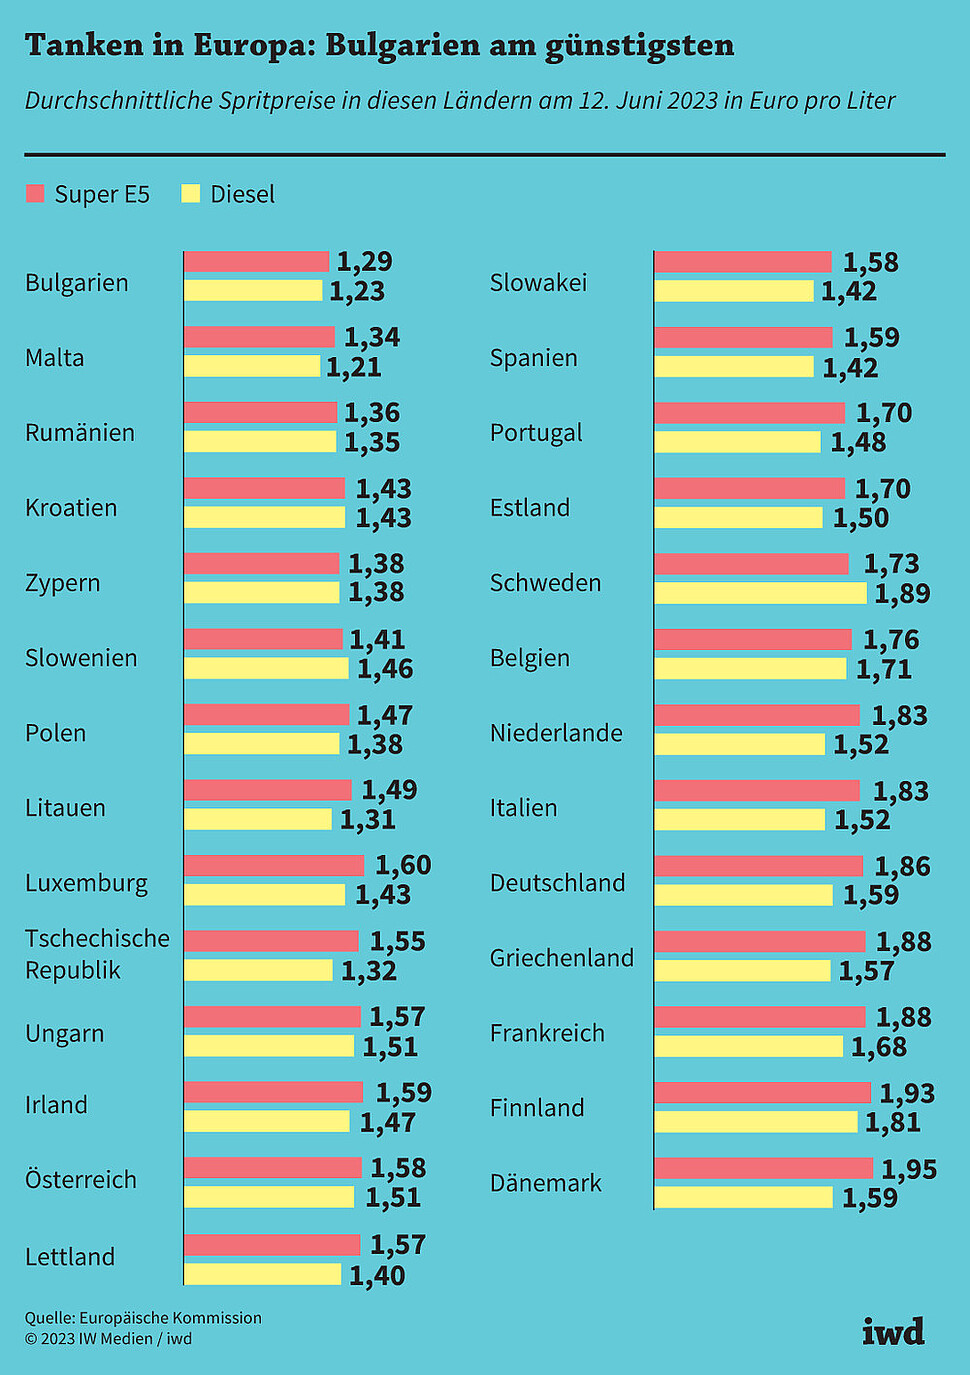 Durchschnittliche Spritpreise in diesen Ländern am 12. Juni 2023 in Euro pro Liter